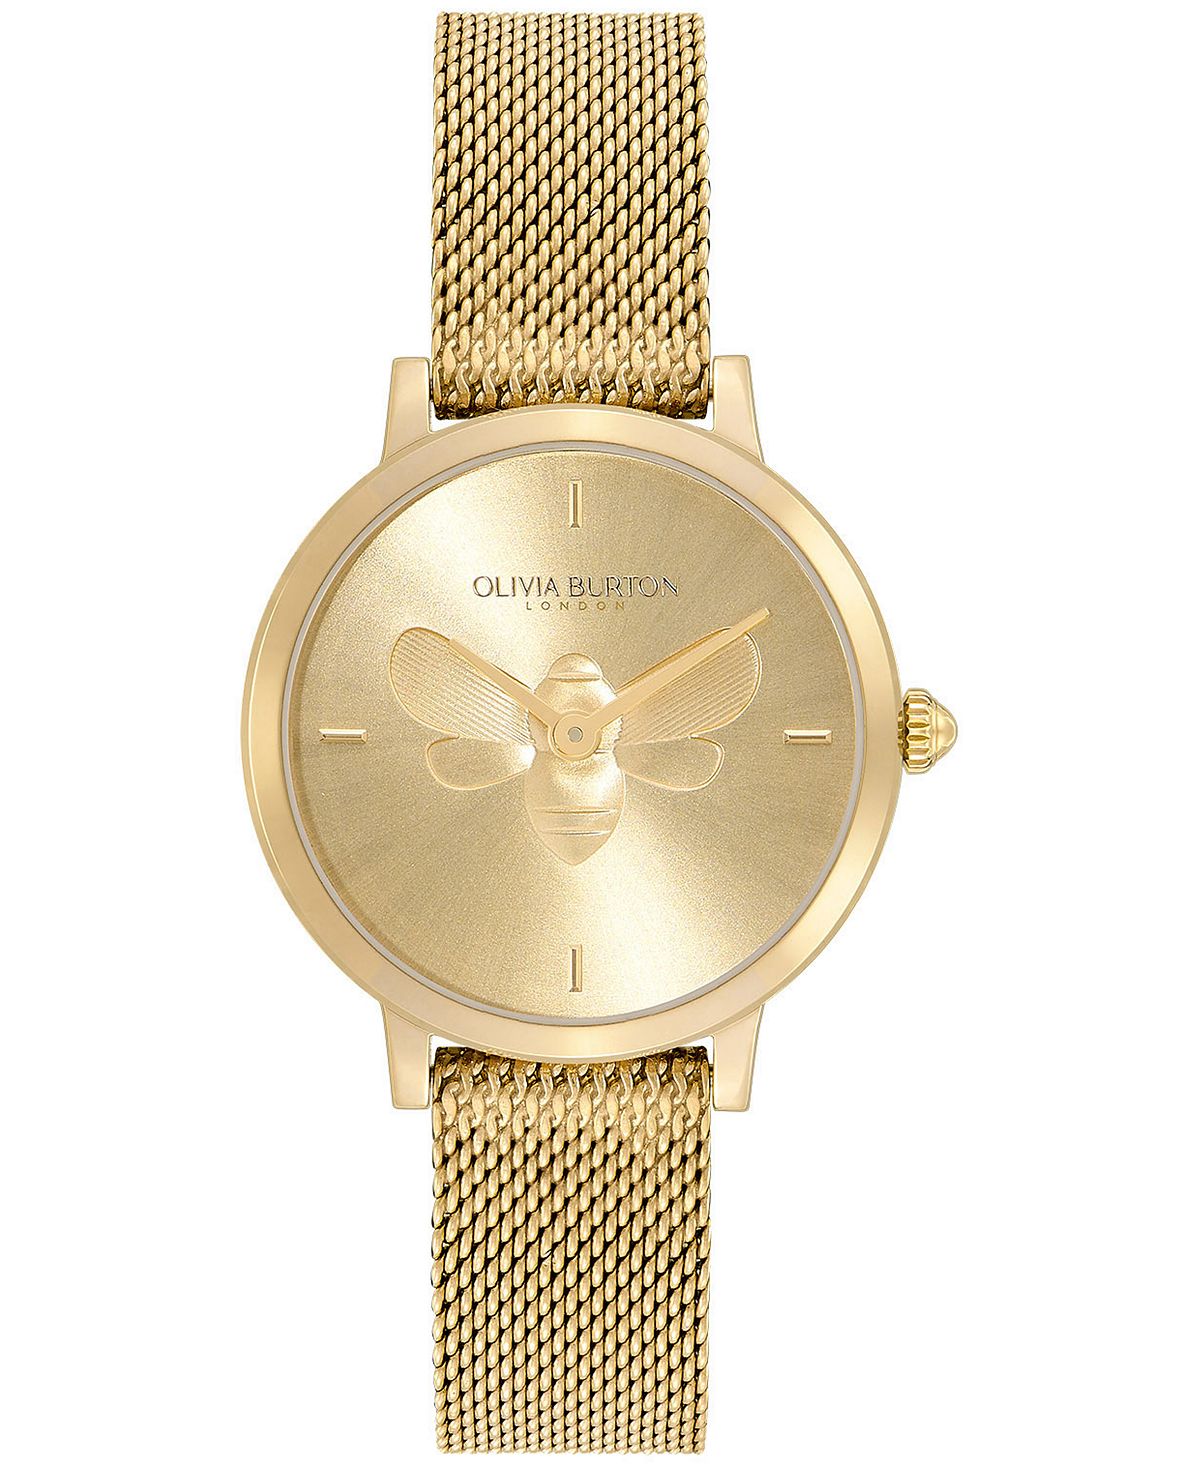 Женские ультратонкие часы Bee из золотистой стали, 28 мм Olivia Burton, золотой